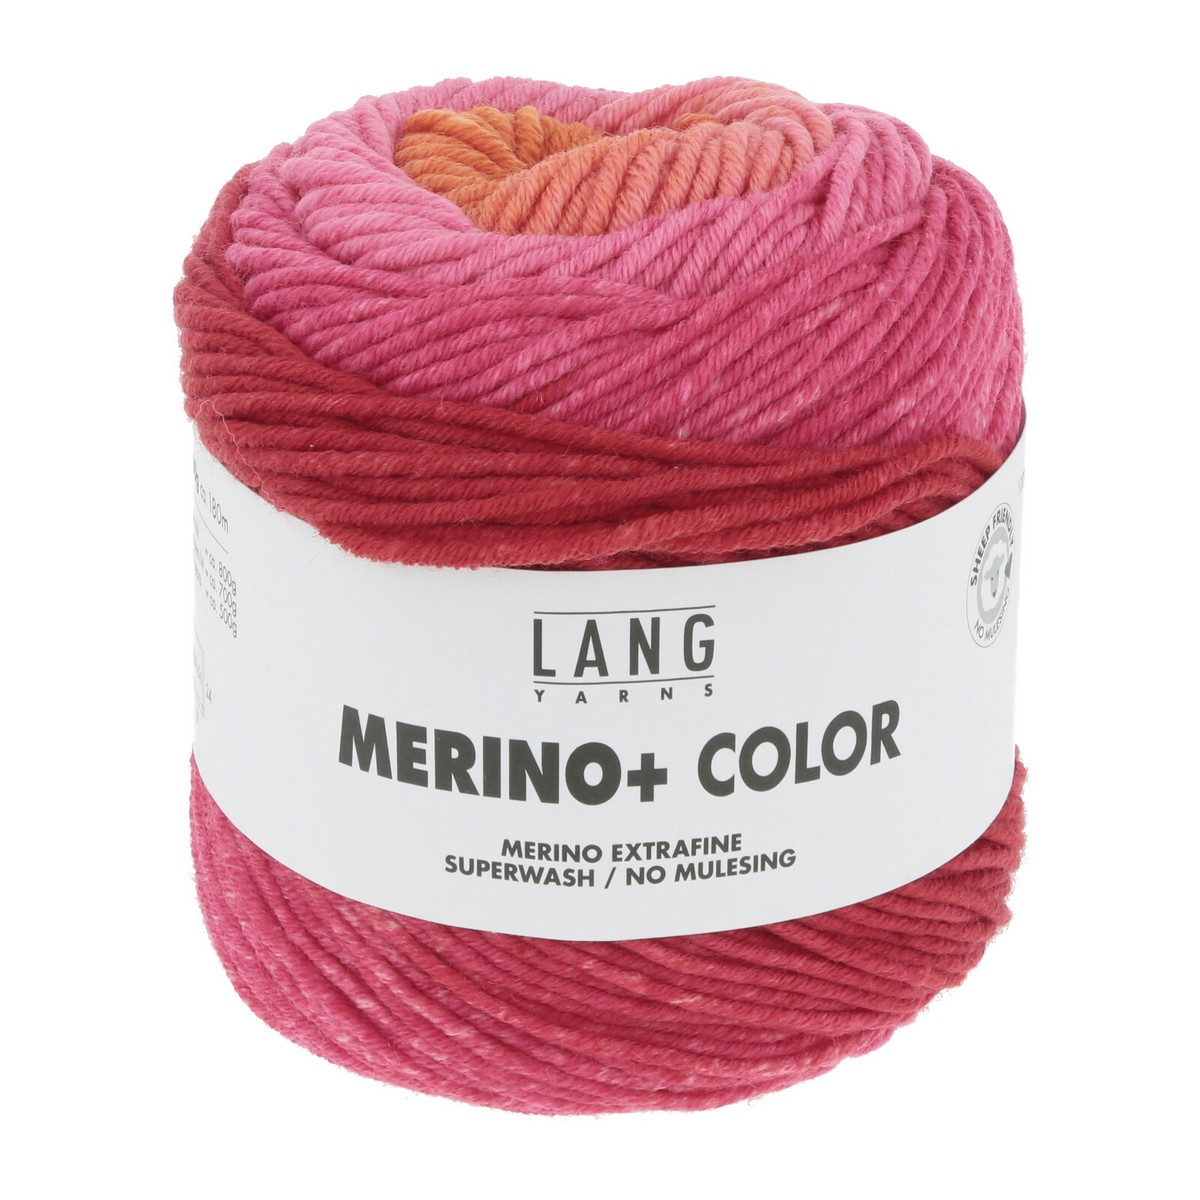 Merino+ Color